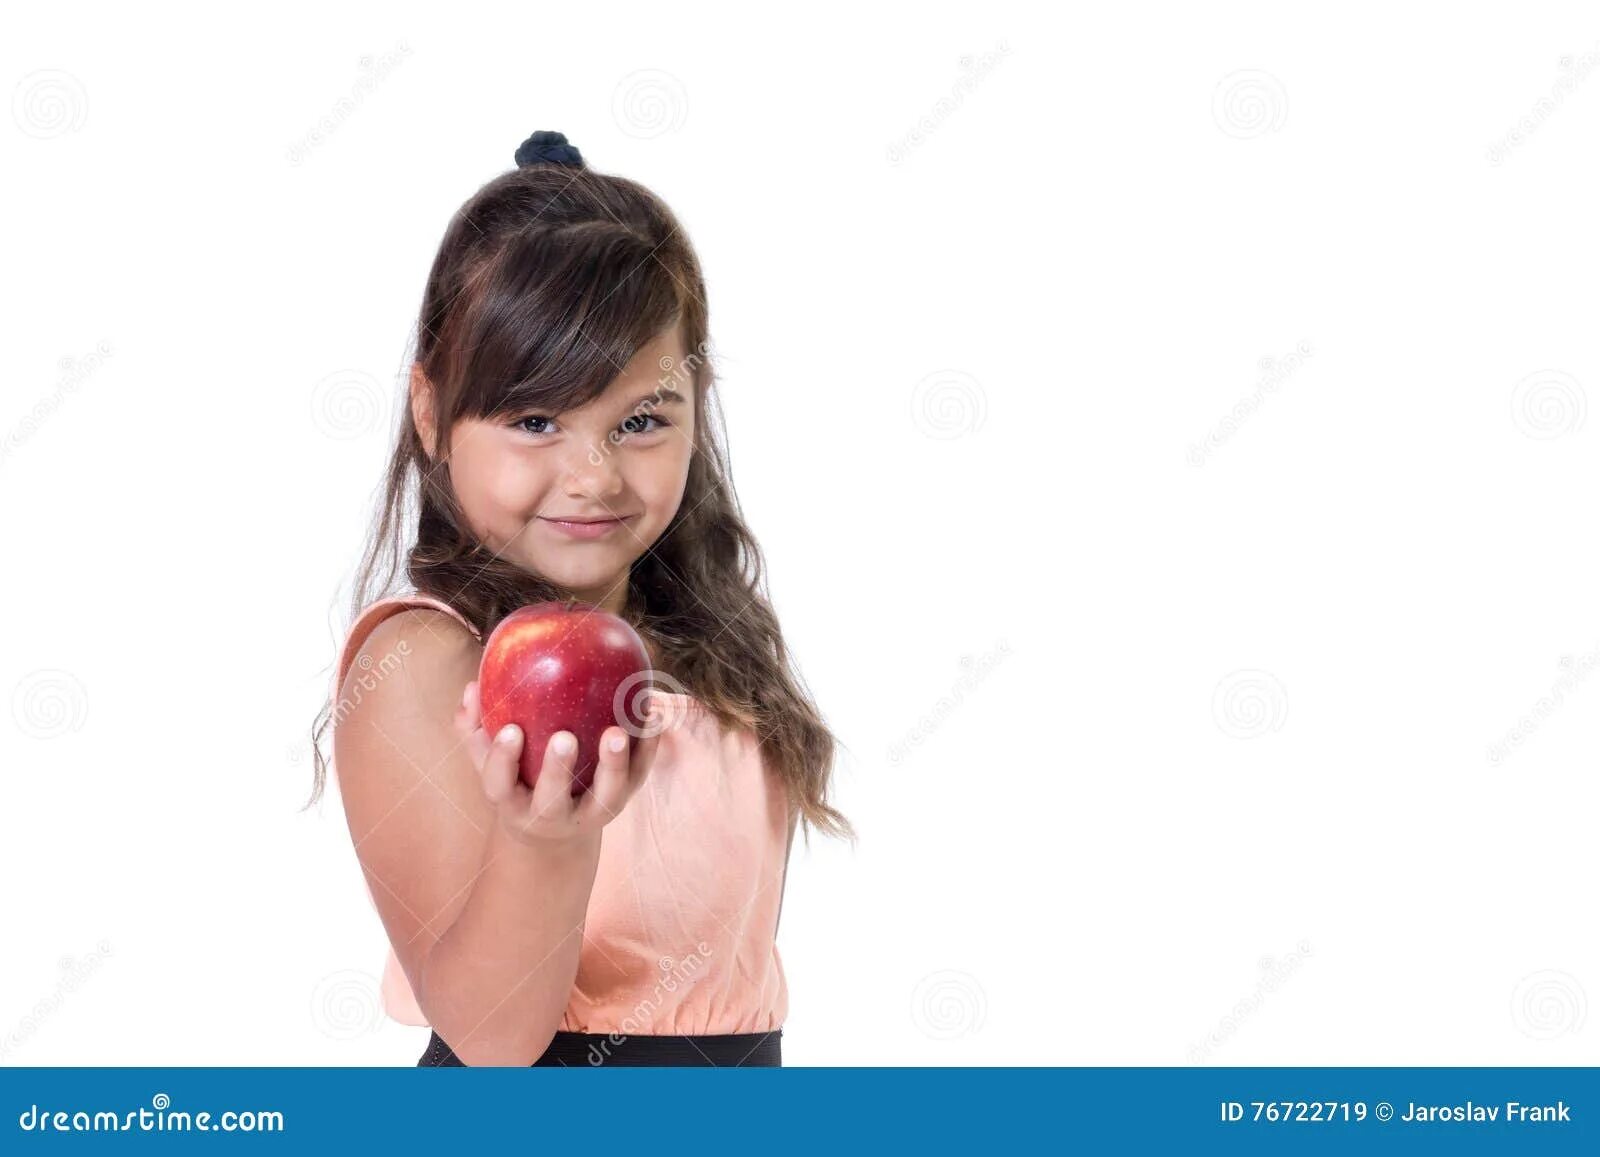 Держит яблоко. Девочка держит в руке яблоко. Брюнетка с яблоком в Руха. Девочка с яблоком в руке.